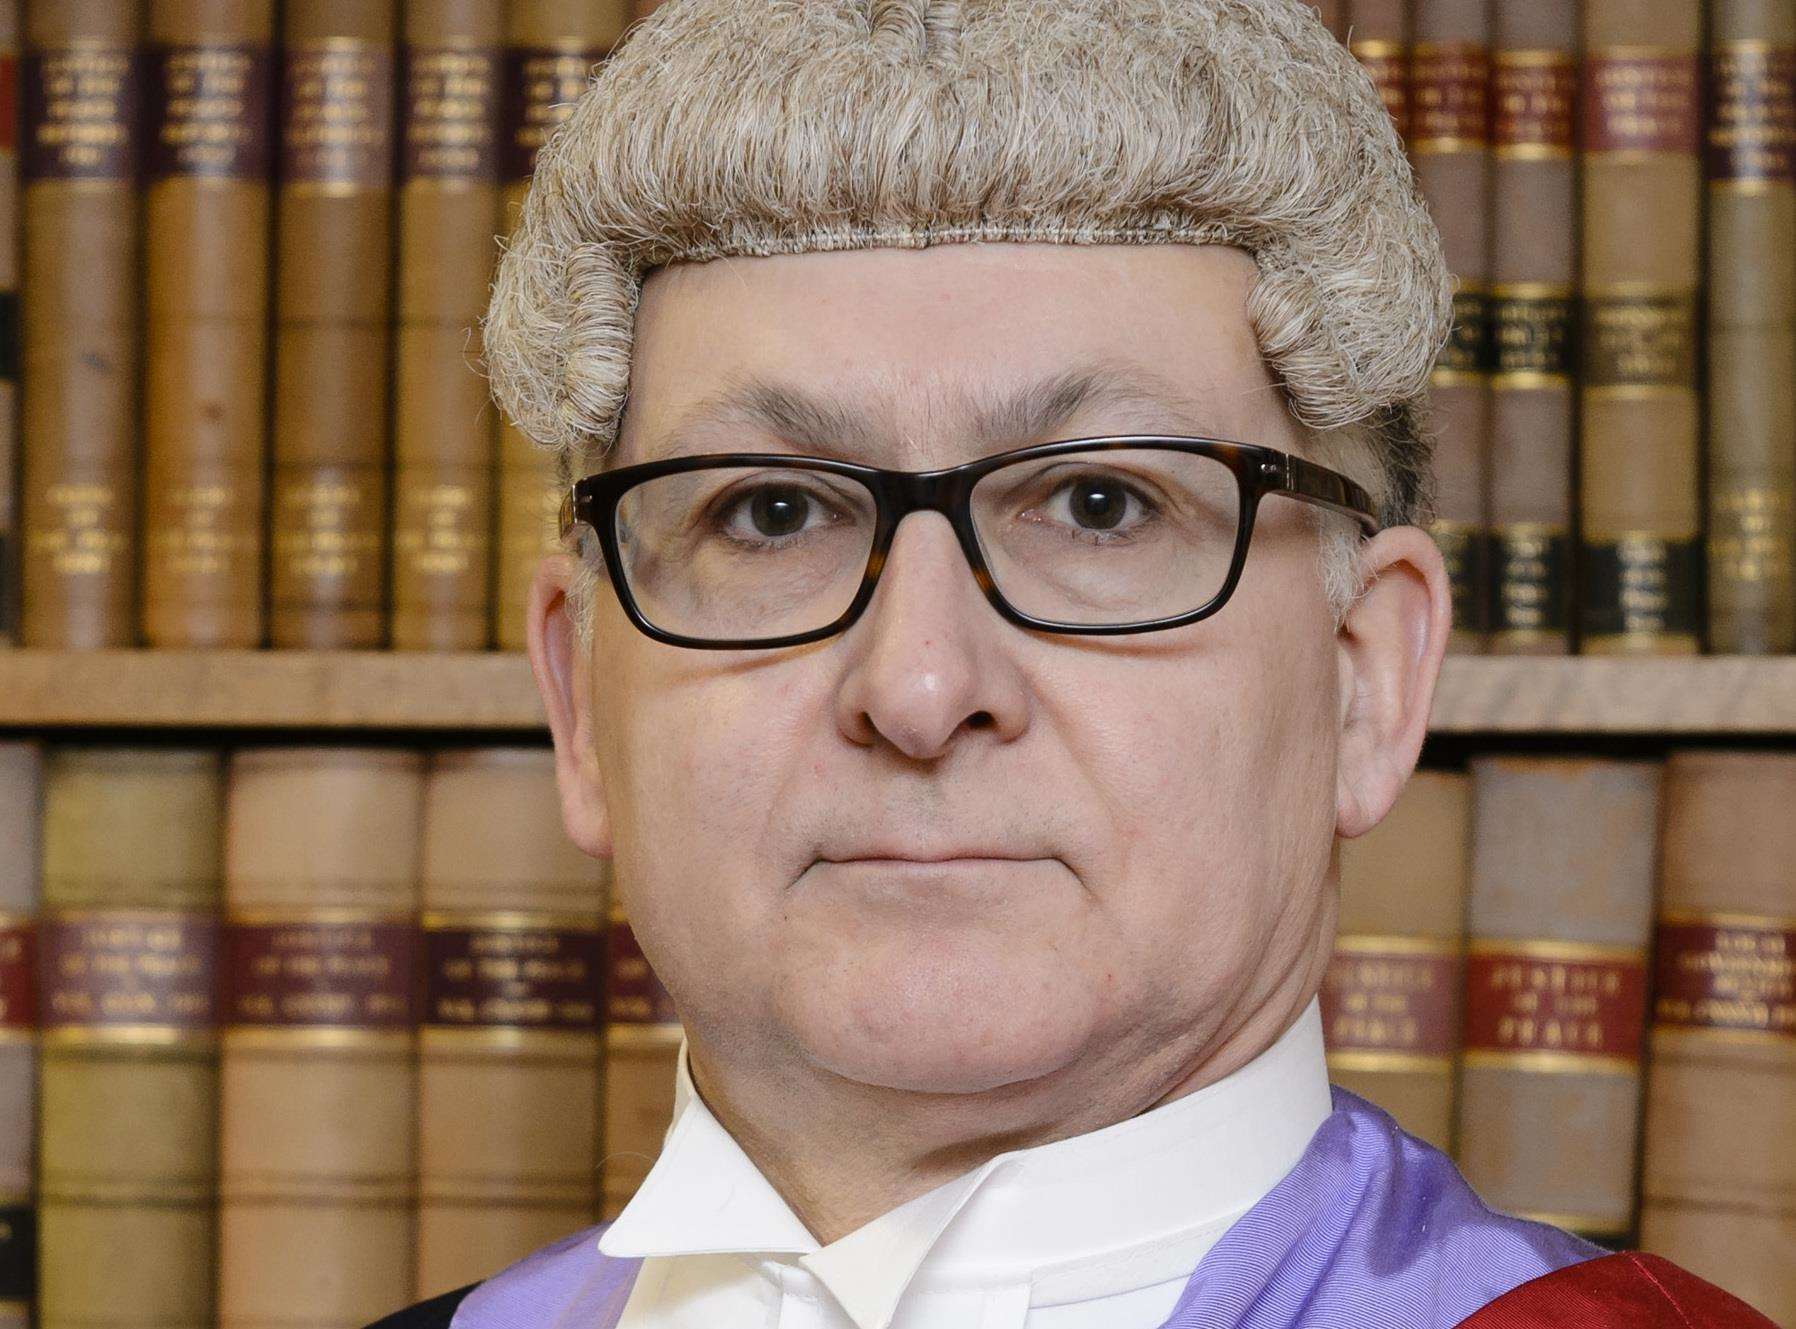 Judge Martin Huseyin